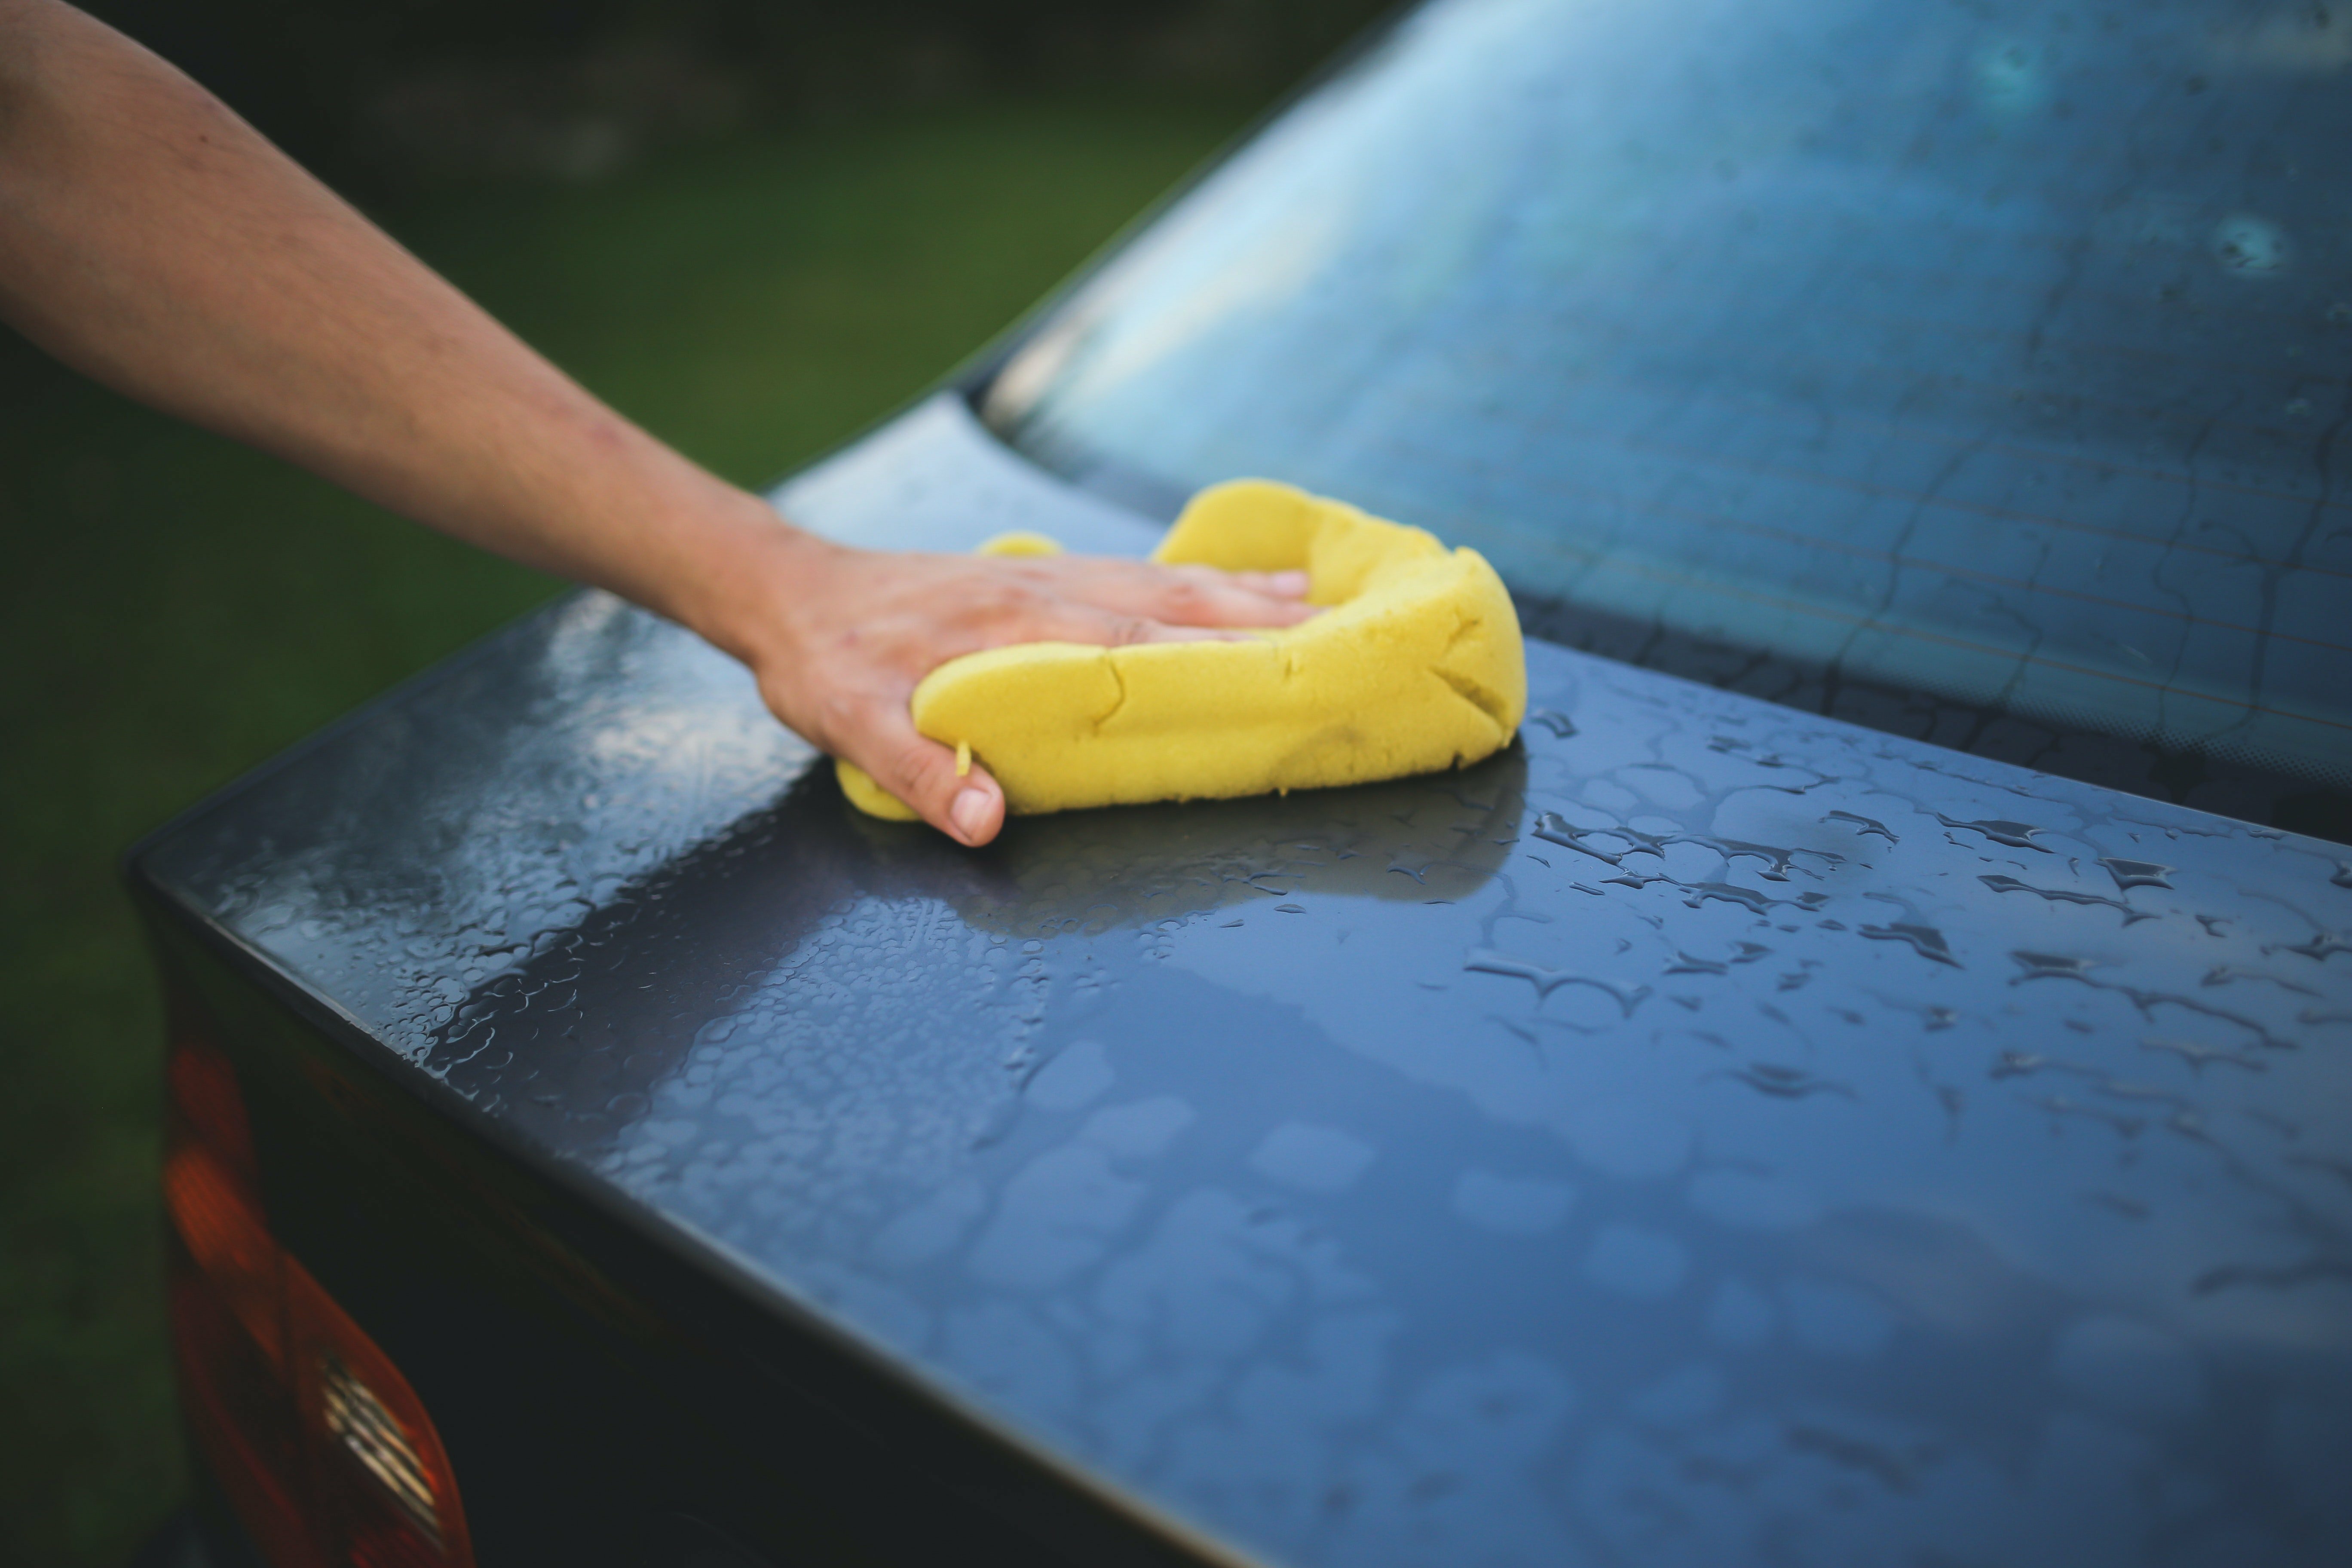 washing a car with a sponge 6003 - ¿Cuánto sobrevive el coronavirus en el interior de tu coche?